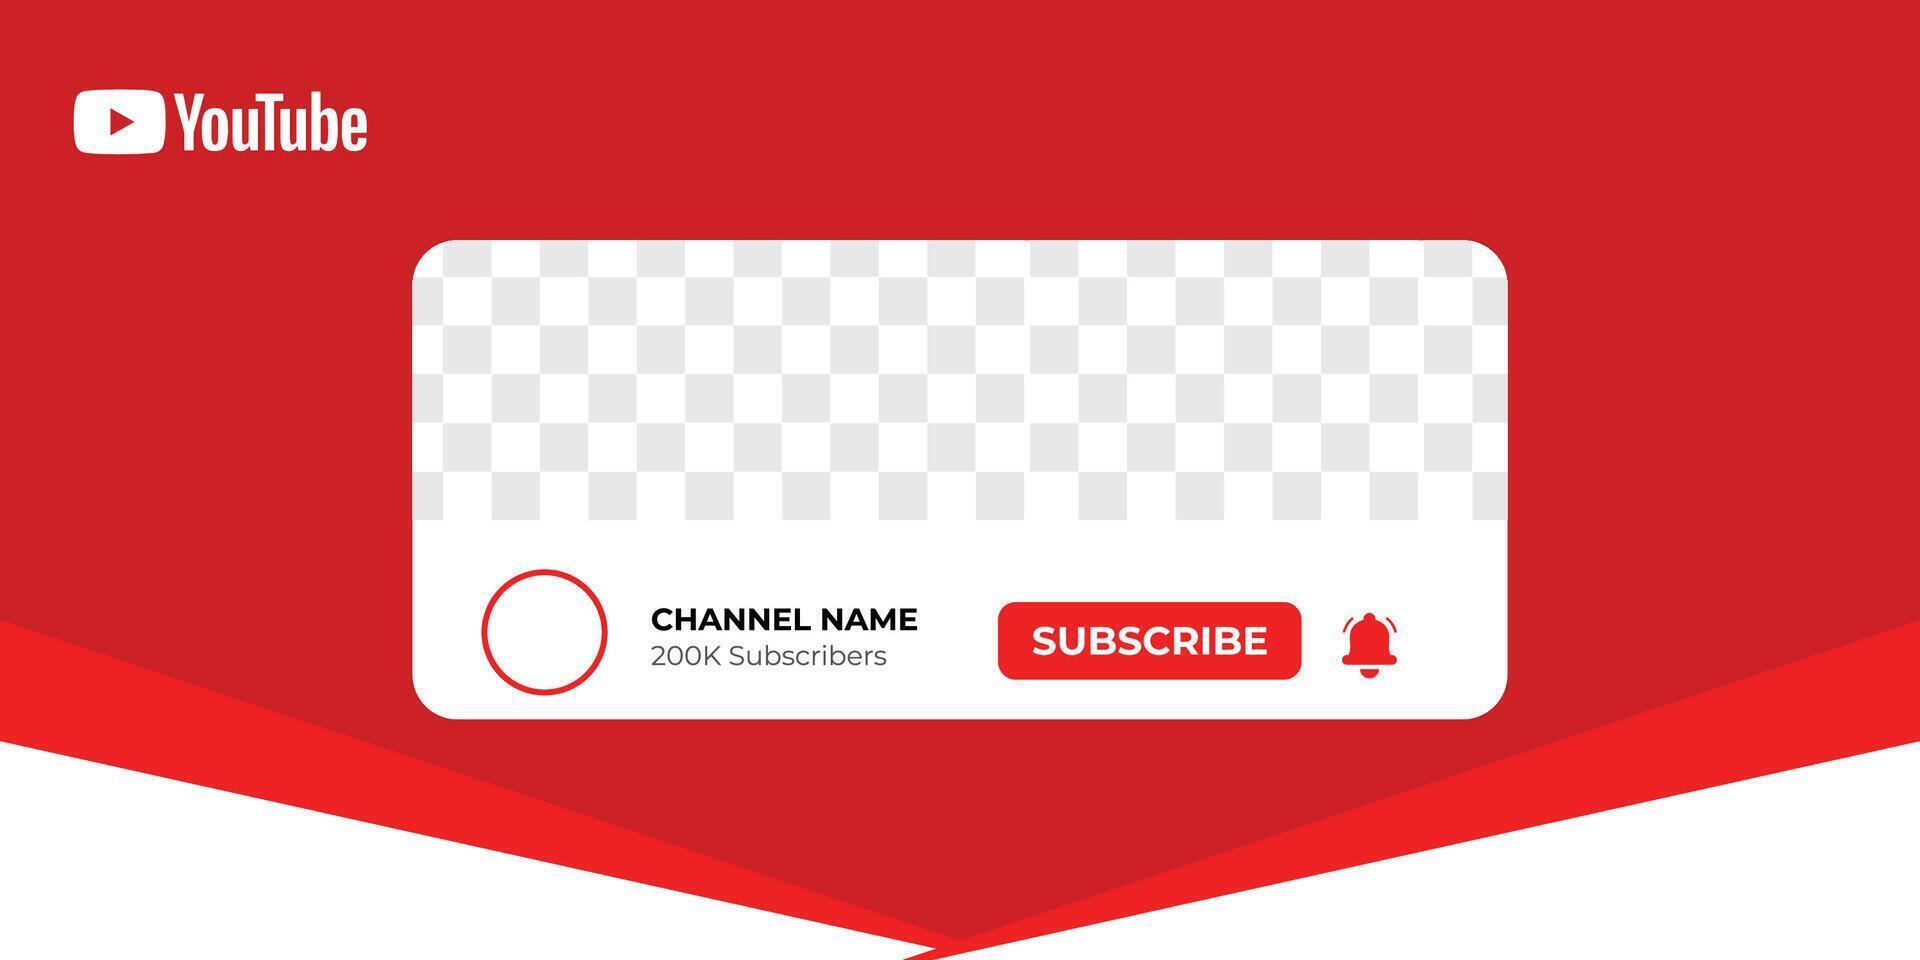 Youtube profil icône interface. souscrire bouton. canal nom. vecteur